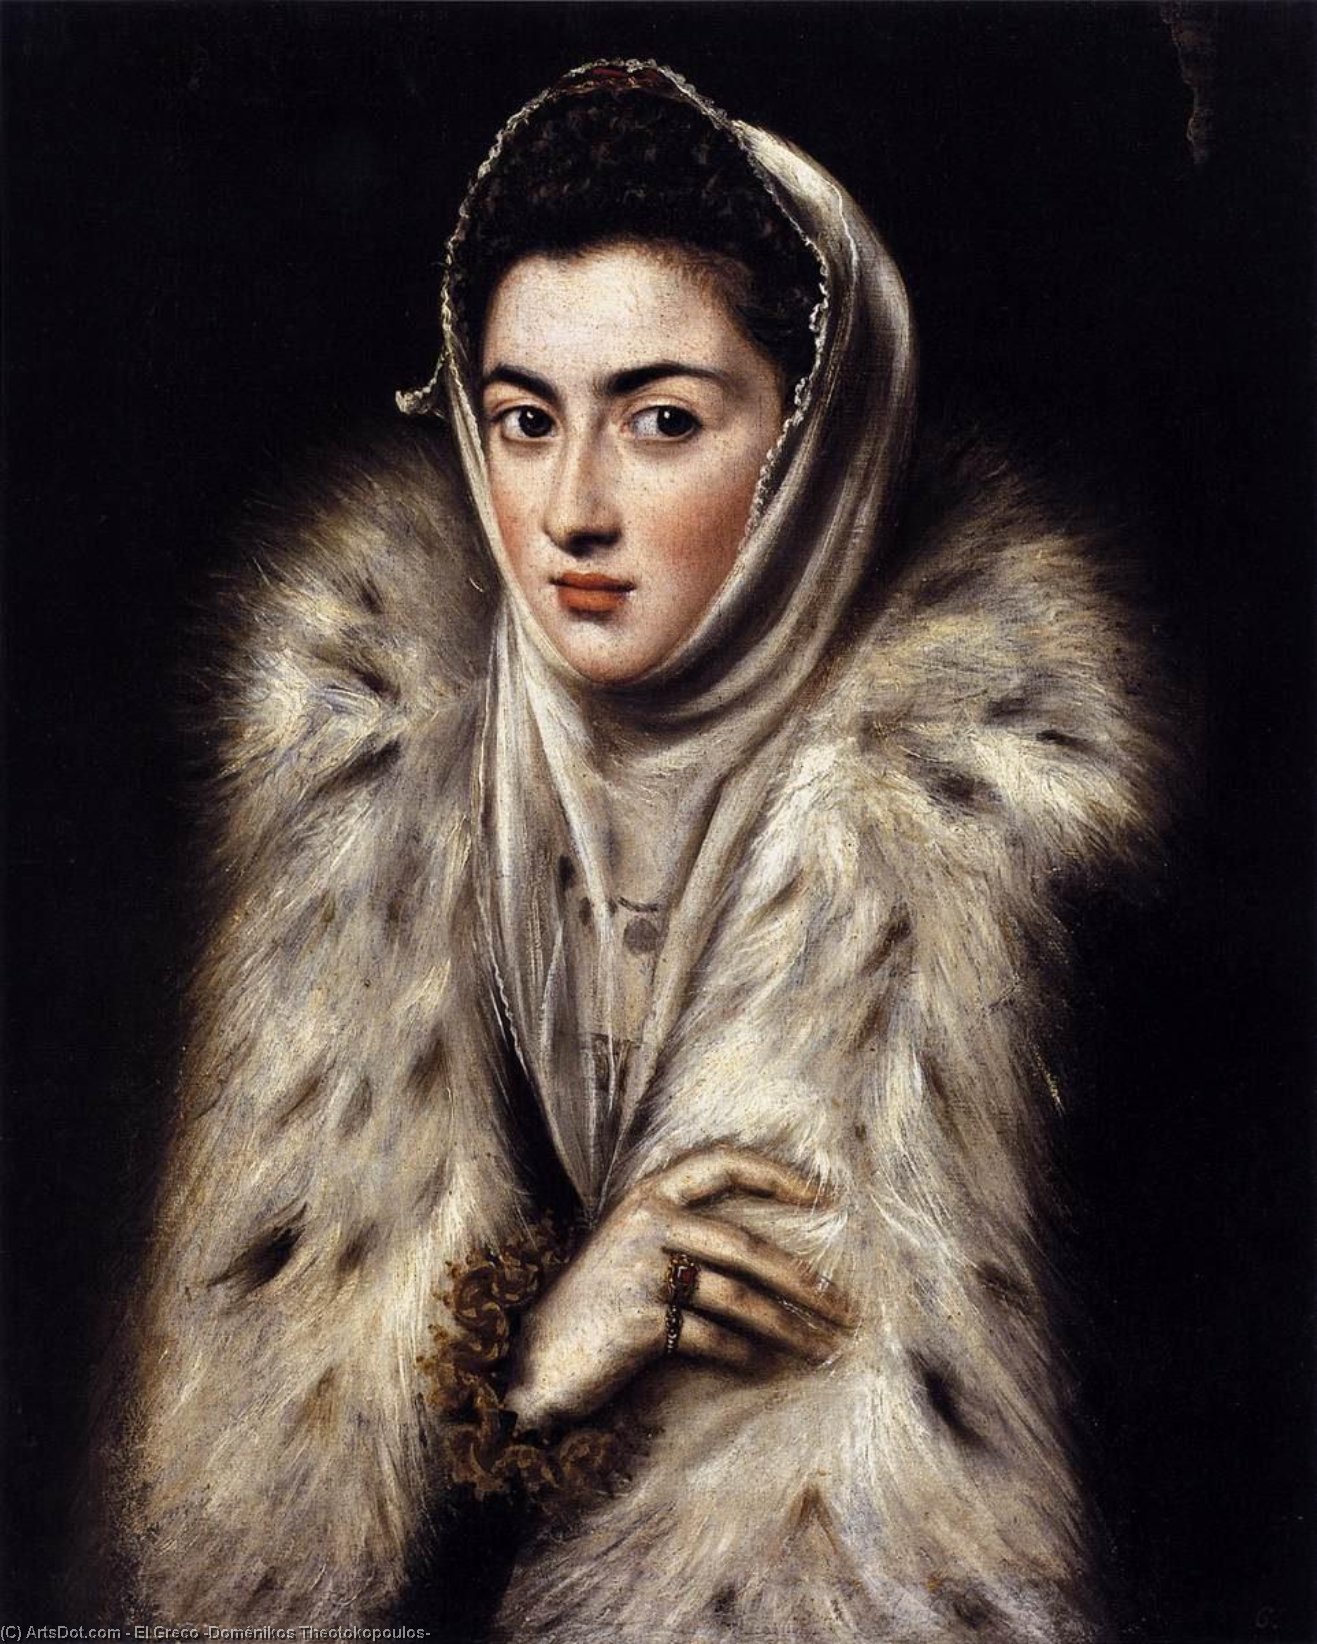 WikiOO.org - Encyclopedia of Fine Arts - Malba, Artwork El Greco (Doménikos Theotokopoulos) - A Lady in a Fur Wrap